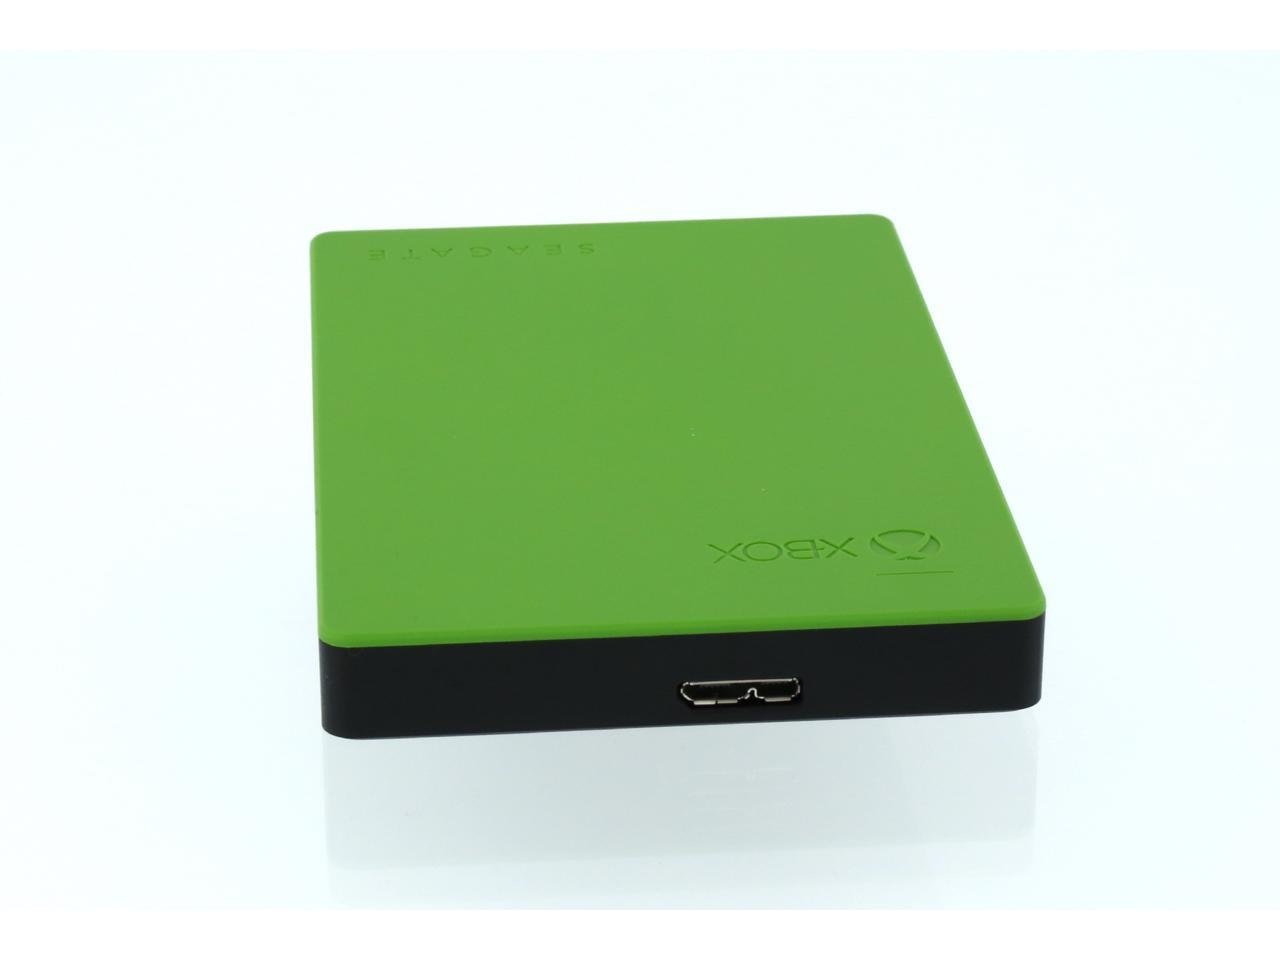 Seagate 2TB Game Drive for Xbox Portable Drive USB 3.0 Model STEA2000403  Green